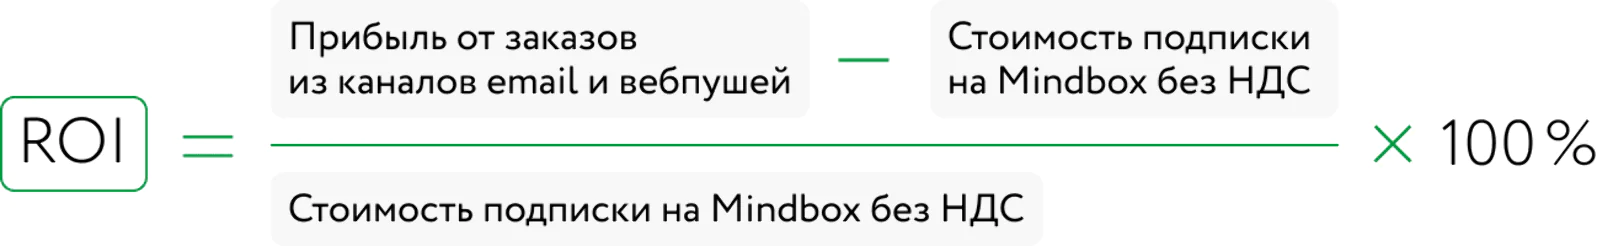 ROI от подключения Mindbox